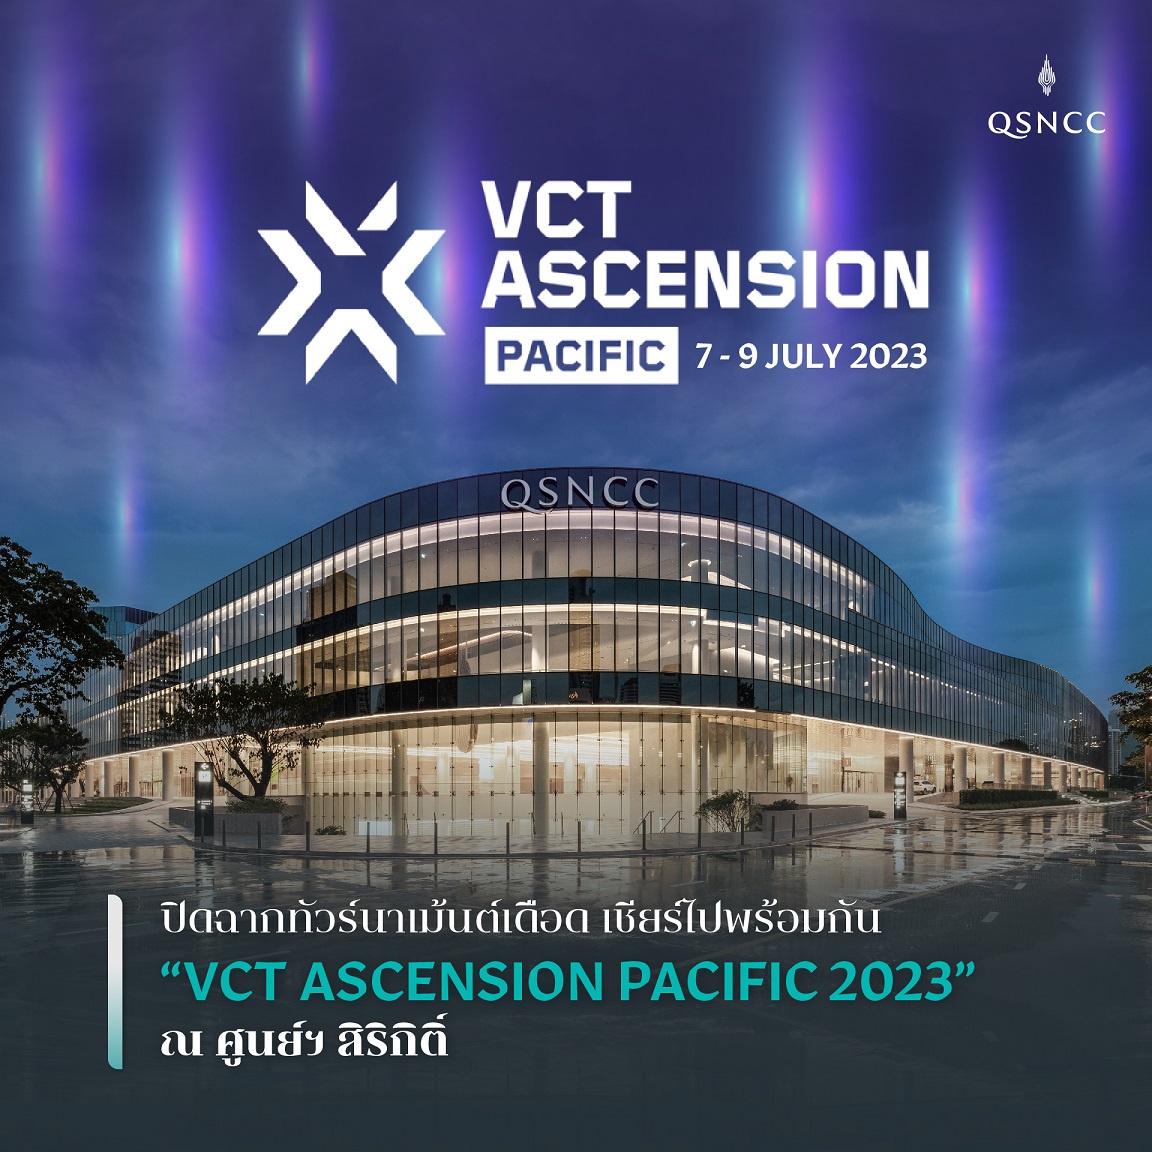 ปิดฉากทัวร์นาเม้นต์เดือด เชียร์ไปพร้อมกัน VCT ASCENSION PACIFIC 2023 ณ ศูนย์ฯ สิริกิติ์